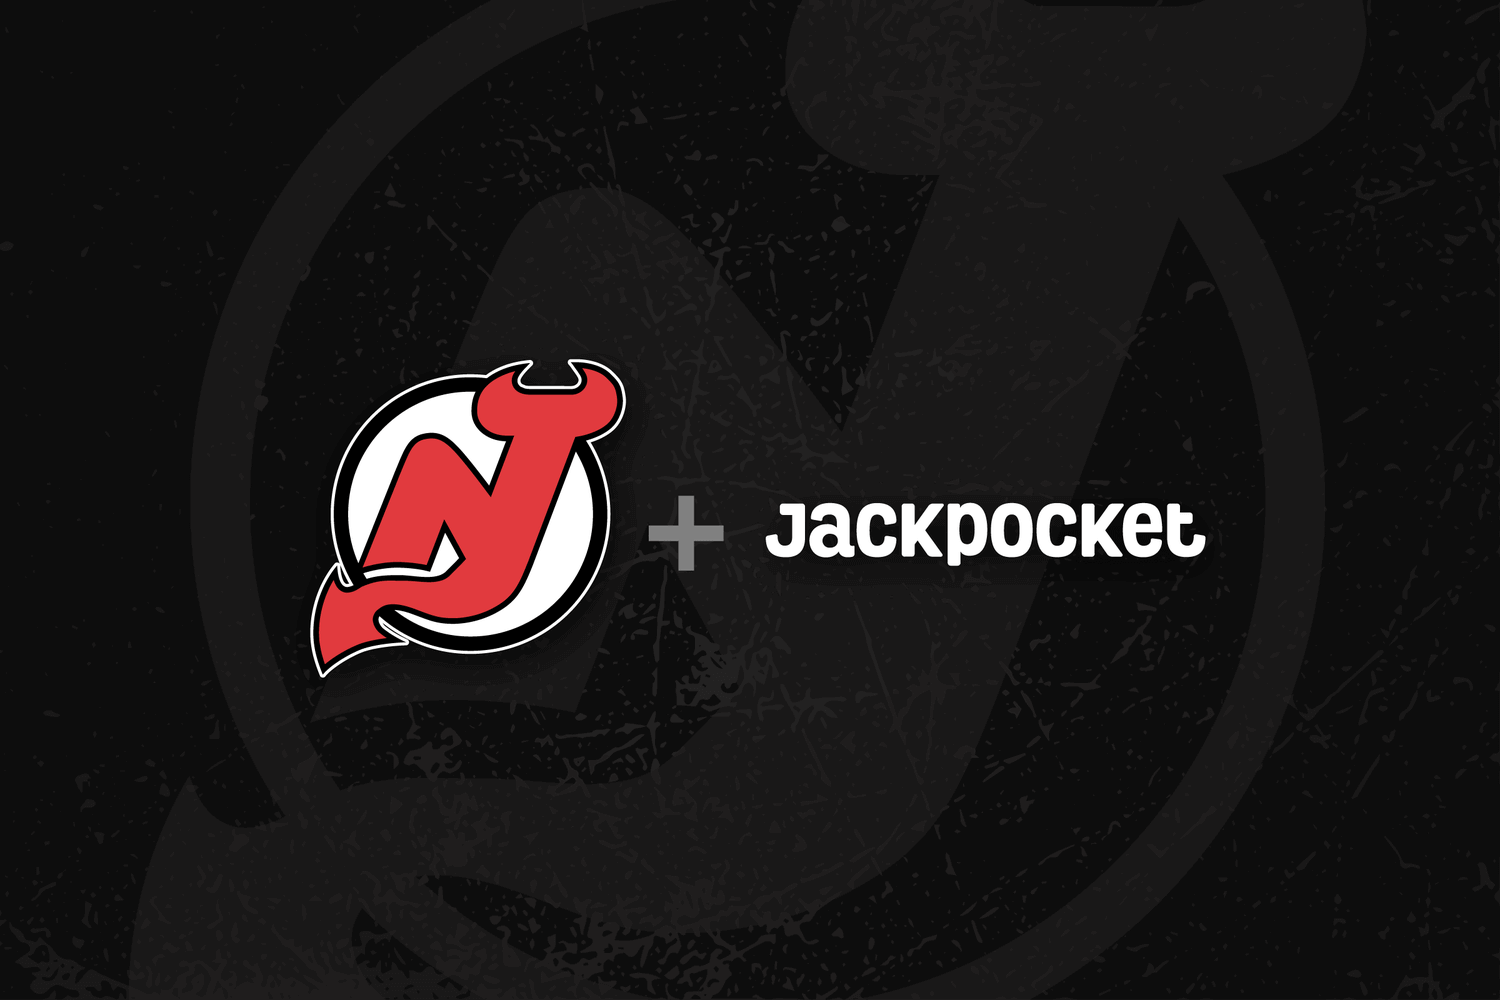 NJ Devils jackpocket